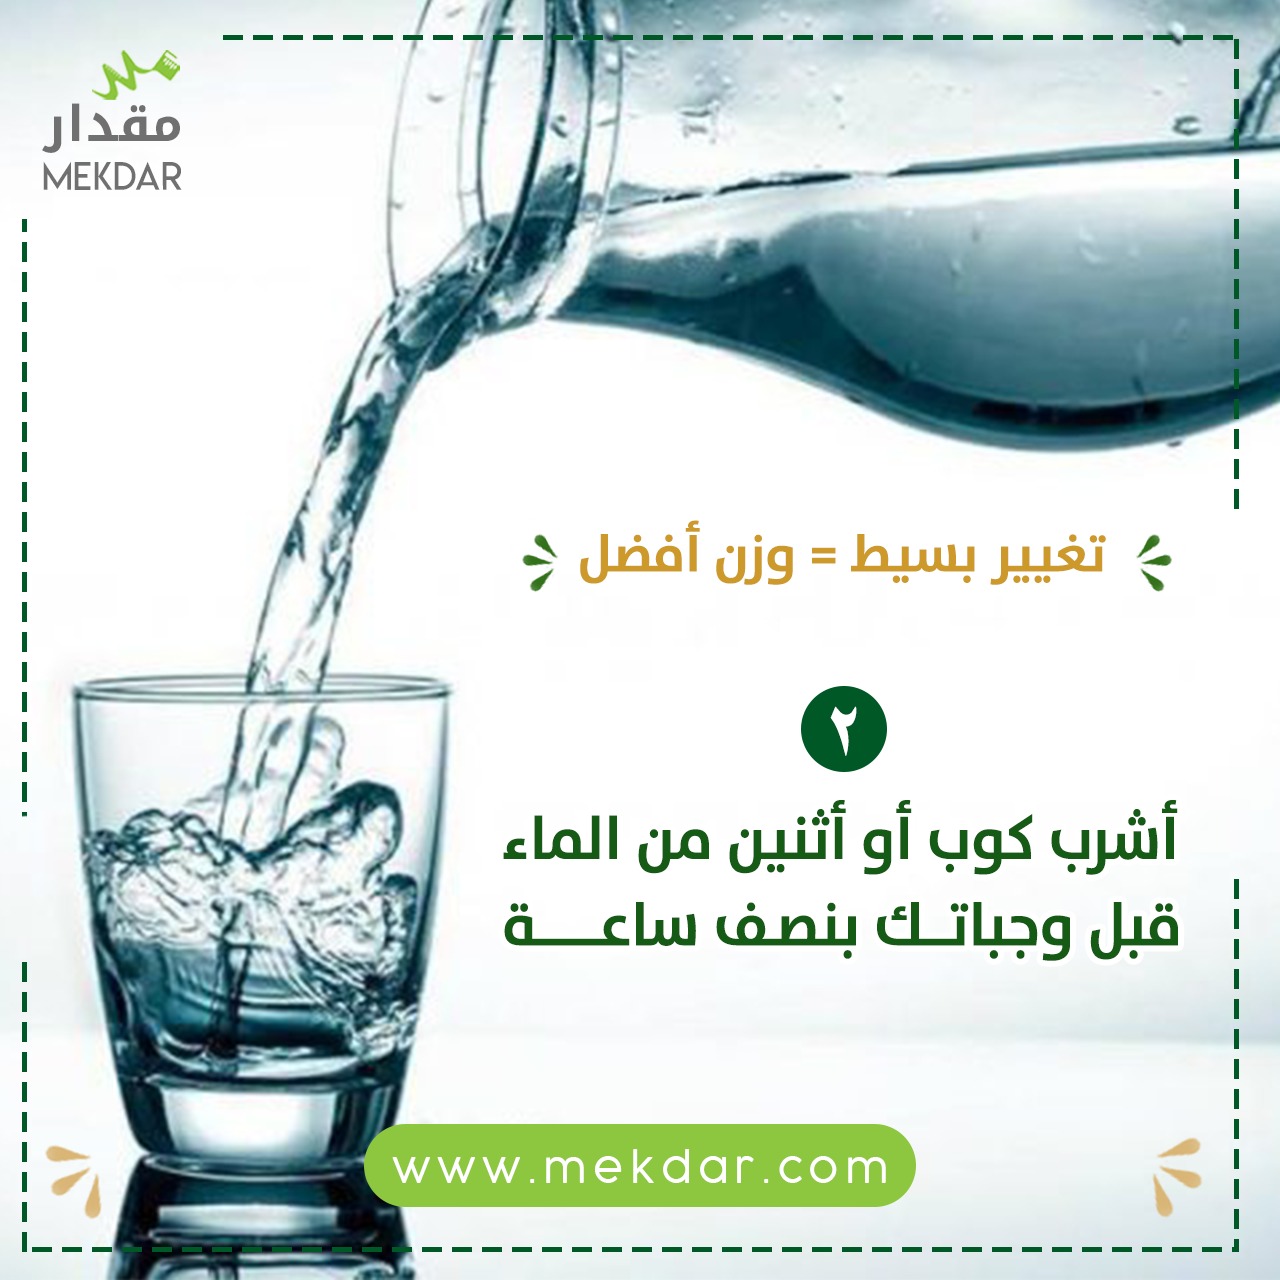 اشرب كوب أو أثنين من الماء قبل وجباتك بنصف ساعة